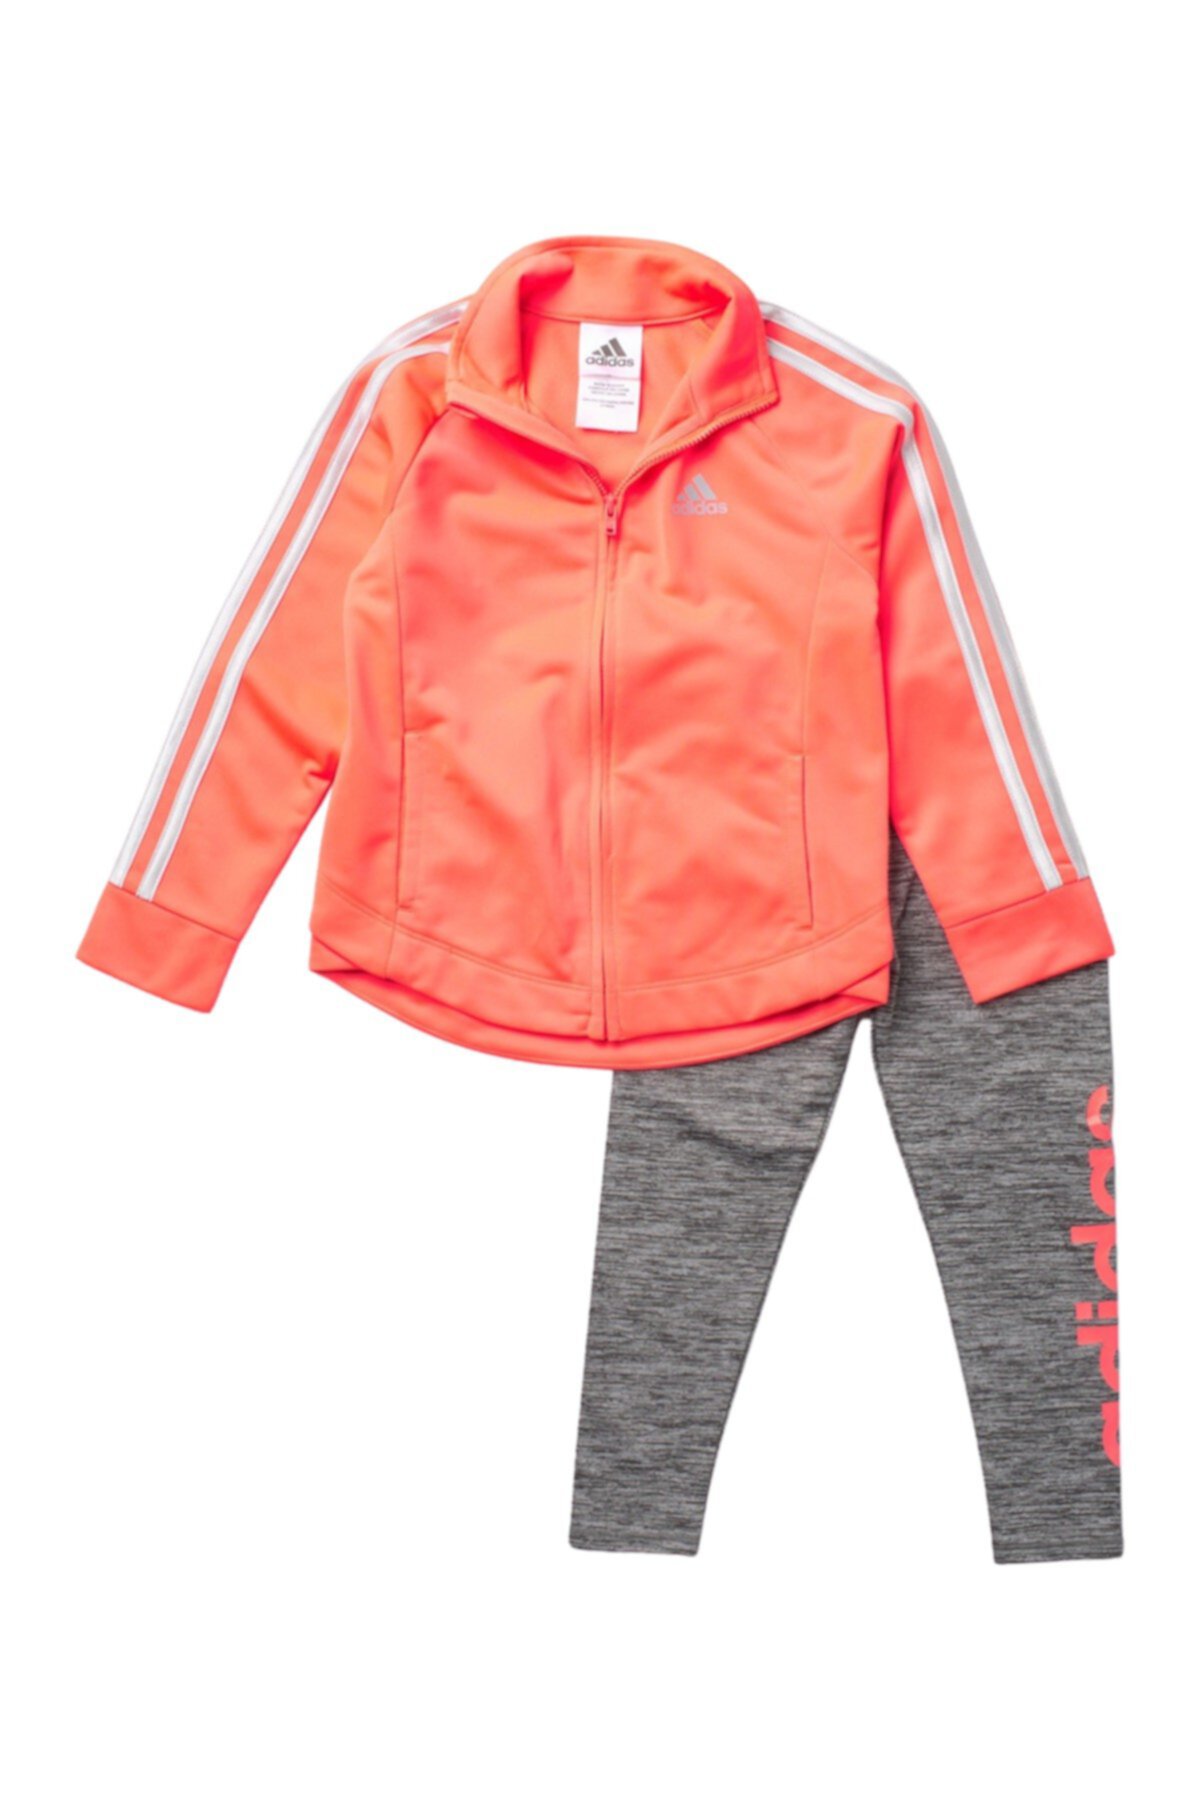 Комплект беговой куртки и колготок (для малышей и маленьких девочек) Adidas